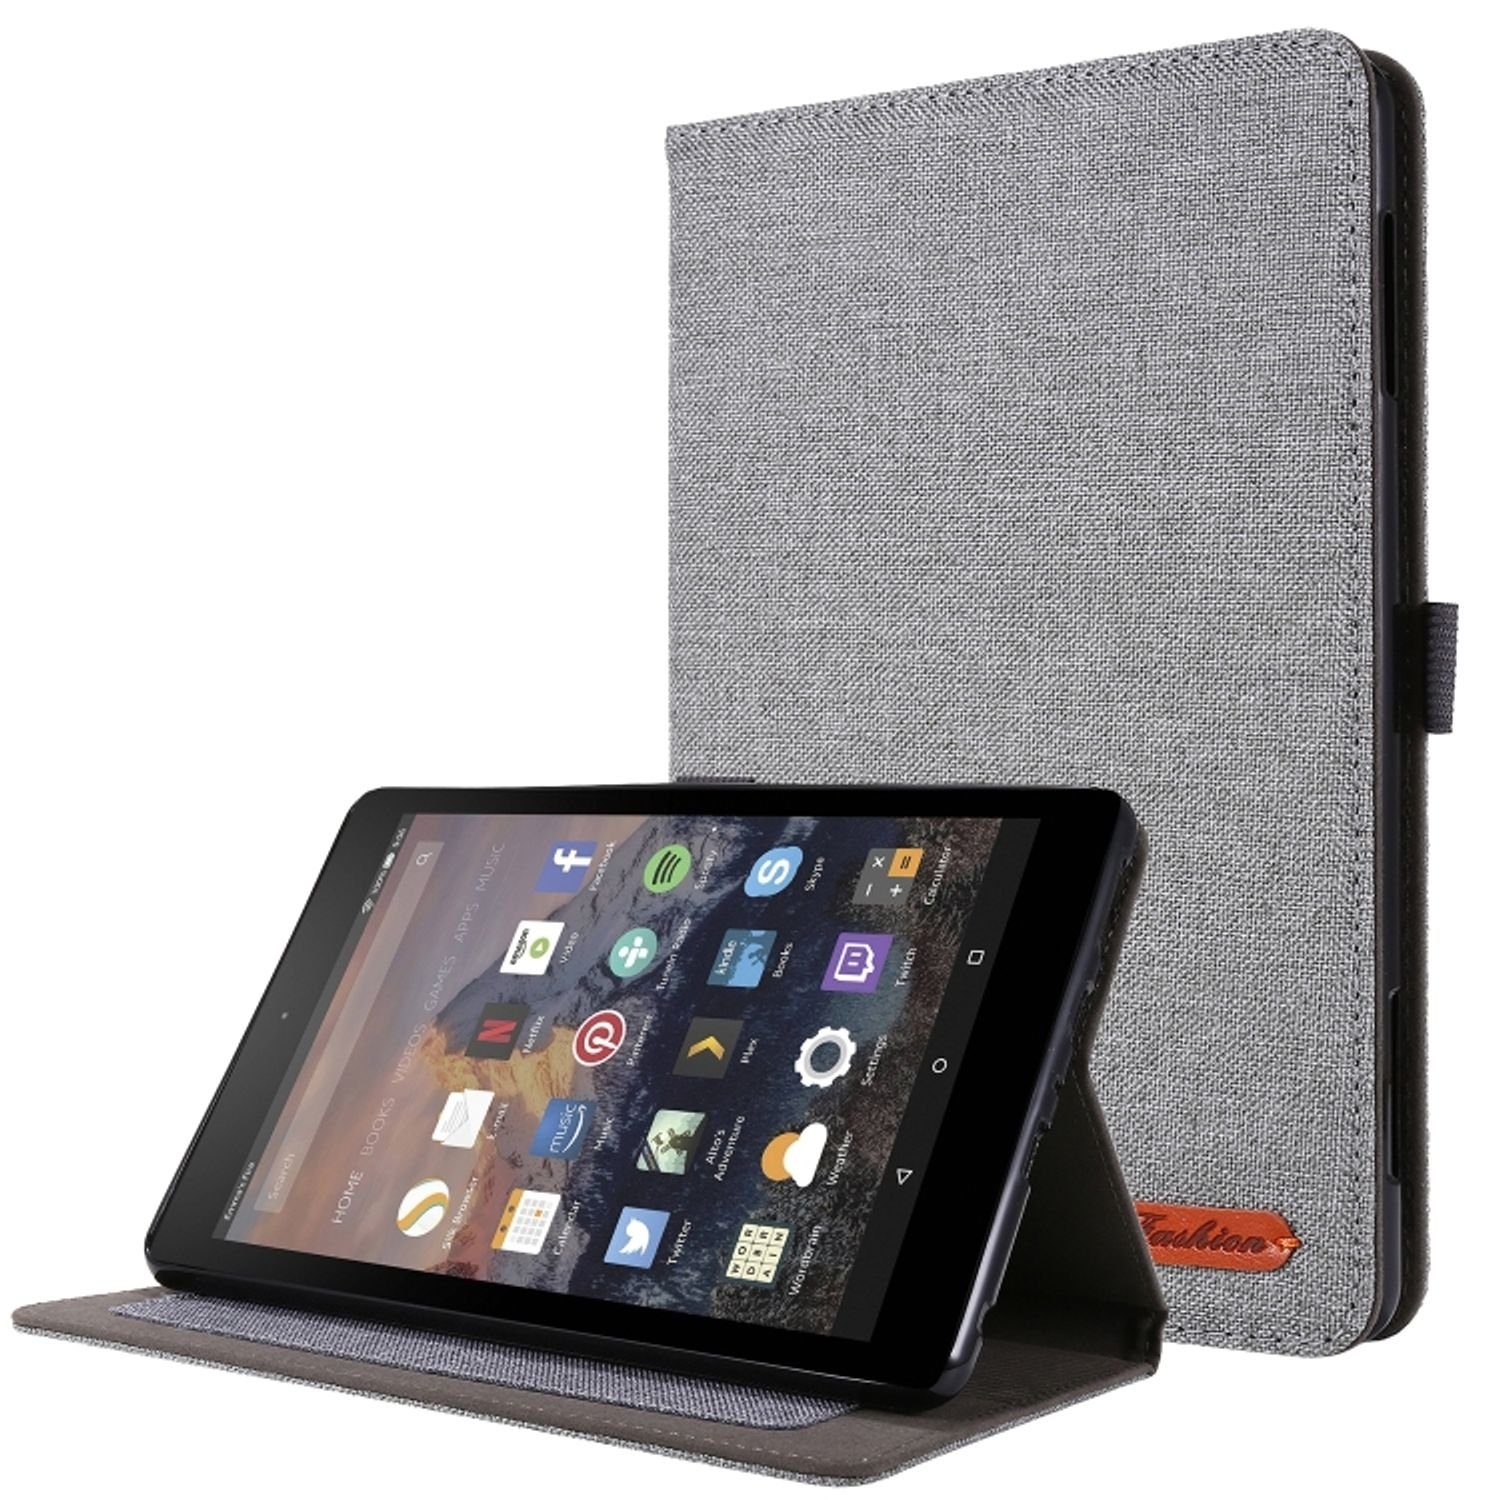 König Design Tablet-Hülle Amazon Kindle Fire HD 10 2021, Tablet-Hülle für  Amazon Kindle Fire HD 10 2021 - Schutztasche Wallet Cover 360 Case Etuis -  Grau online kaufen | OTTO